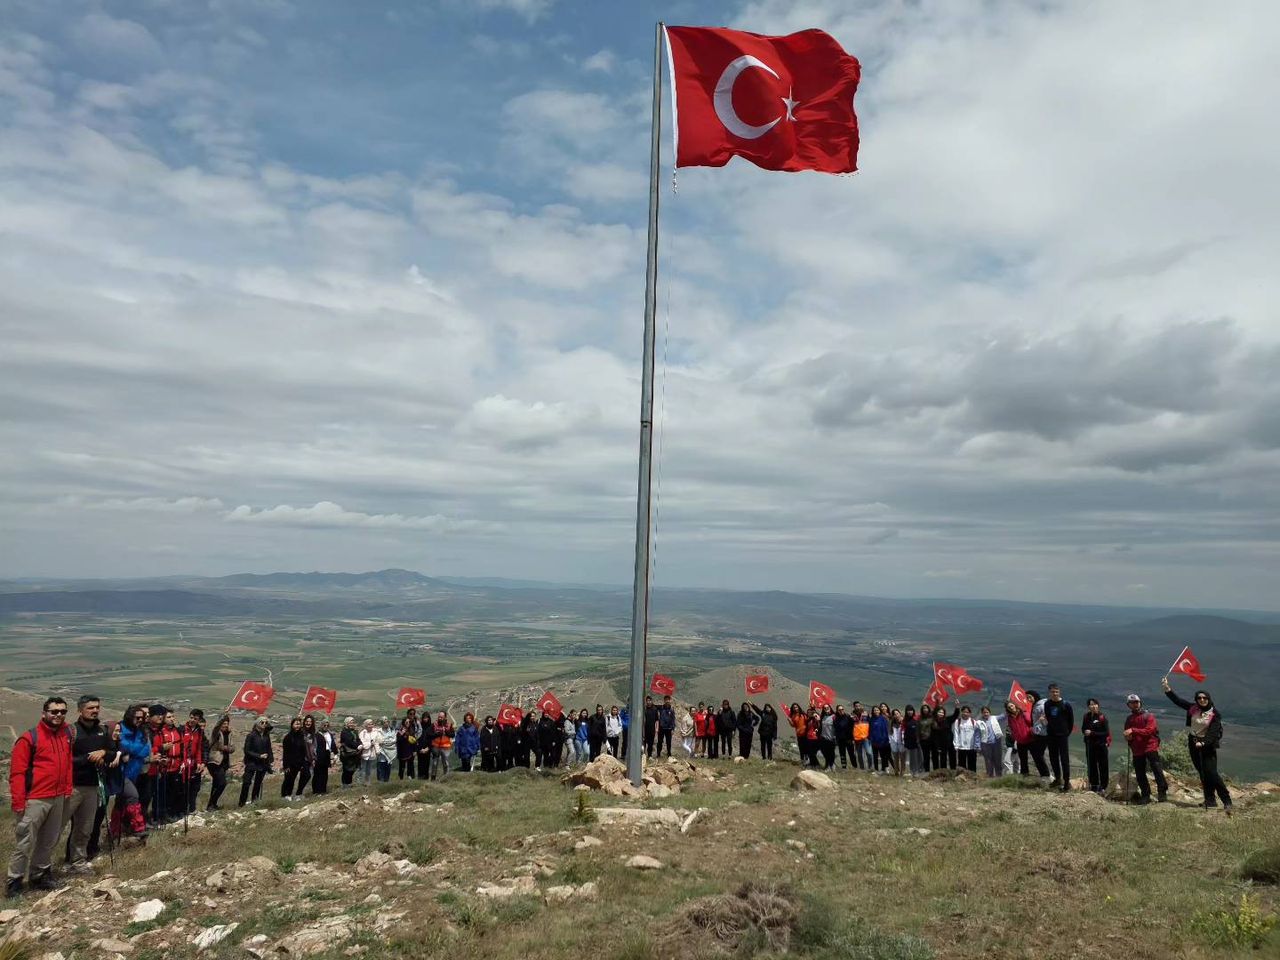 19 Mayıs Atatürk’ü Anma Gençlik ve Spor Bayramı'nda Kırşehir Gençlik ve Spor İl Müdürlüğü Gönüllü Gençlerle Cemele Dağ Tırmanışı Etkinliği Düzenlendi